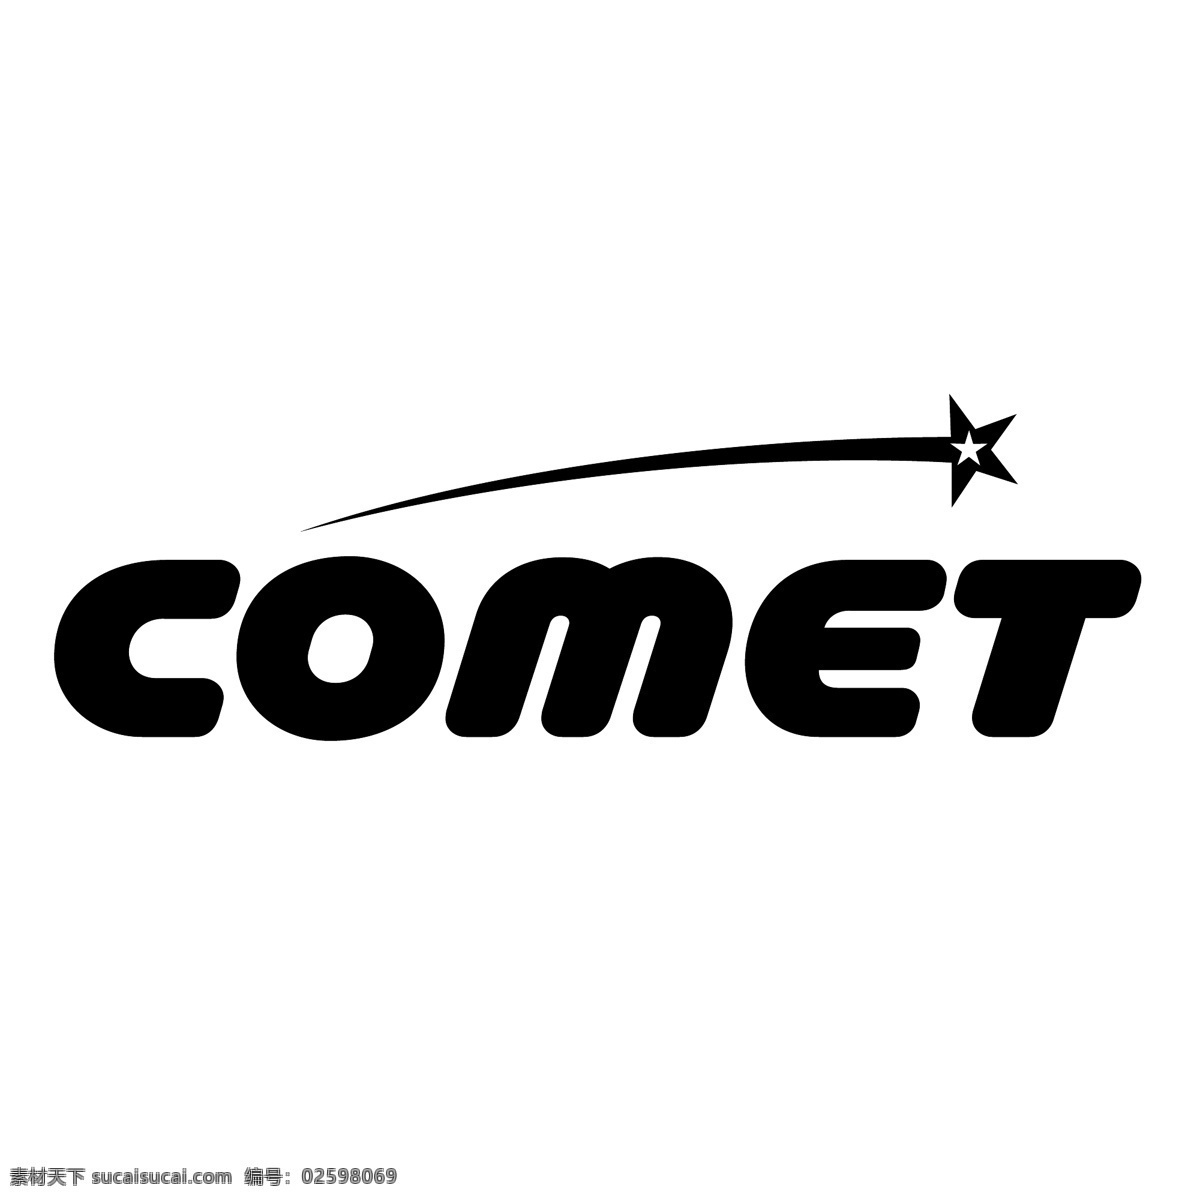 彗星 彗星的标识 标识为免费 白色